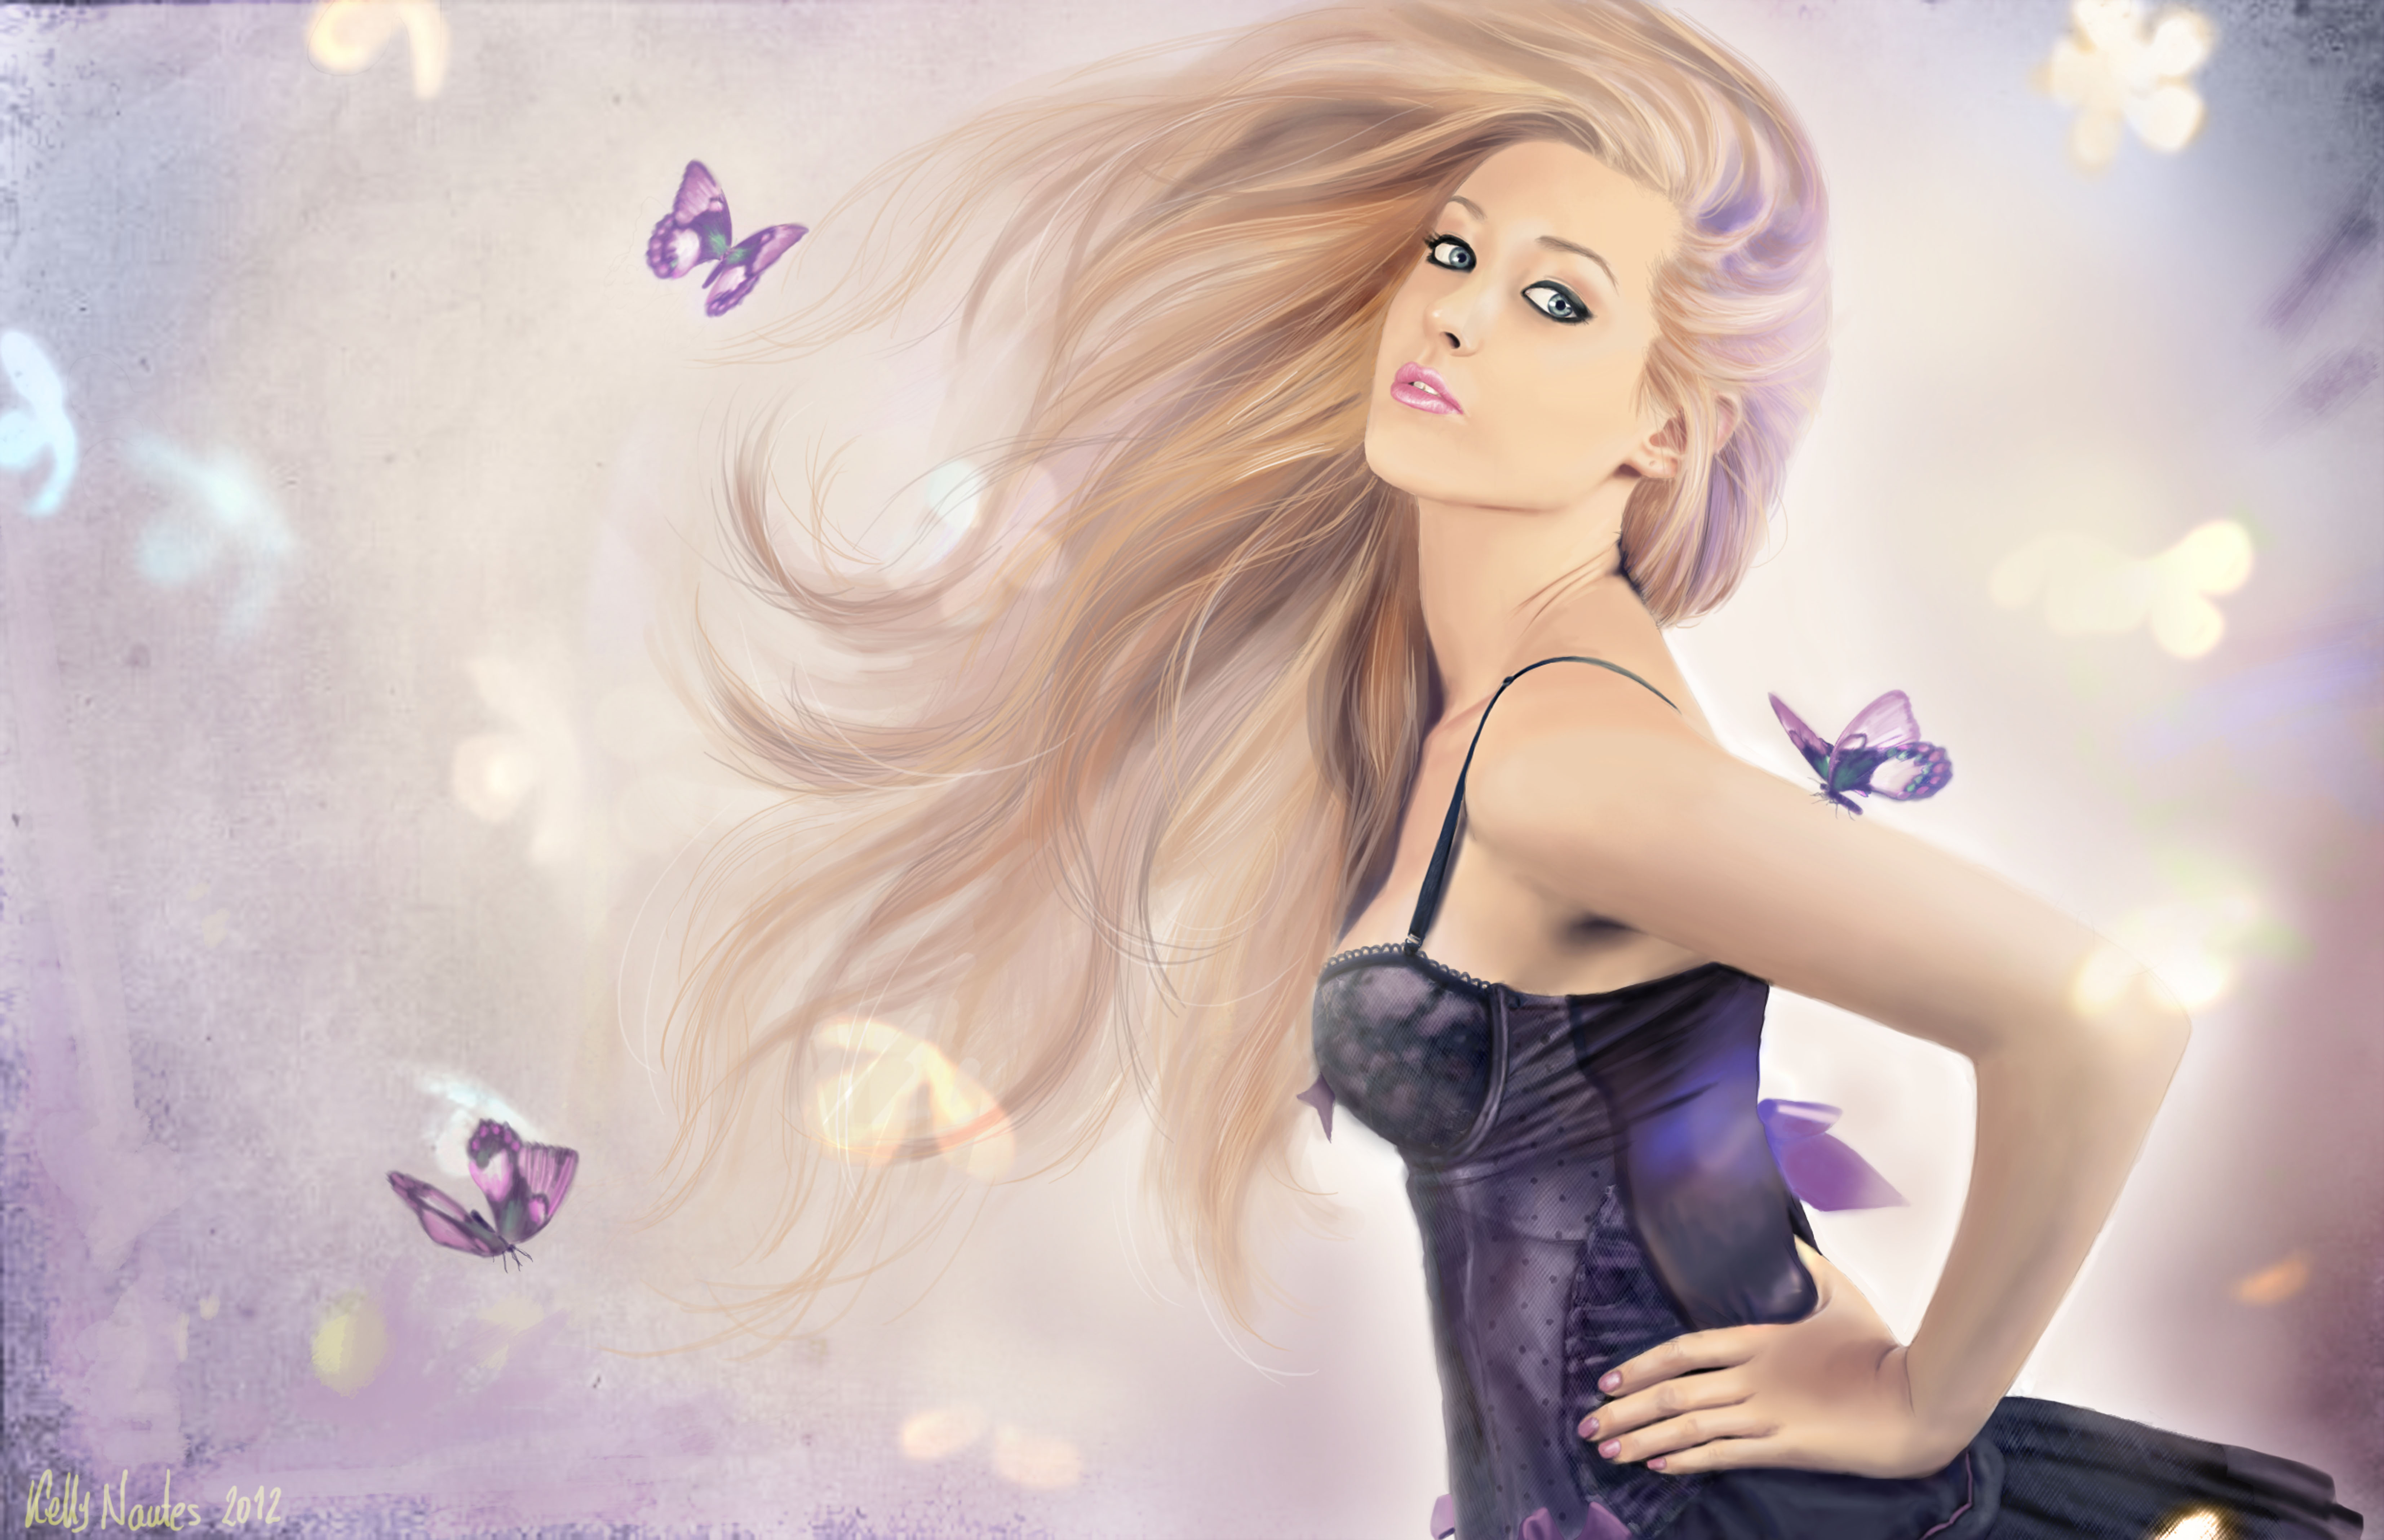 Free download wallpaper Butterfly, Purple, Artistic, Blonde, Women, Blue Eyes, Lipstick on your PC desktop